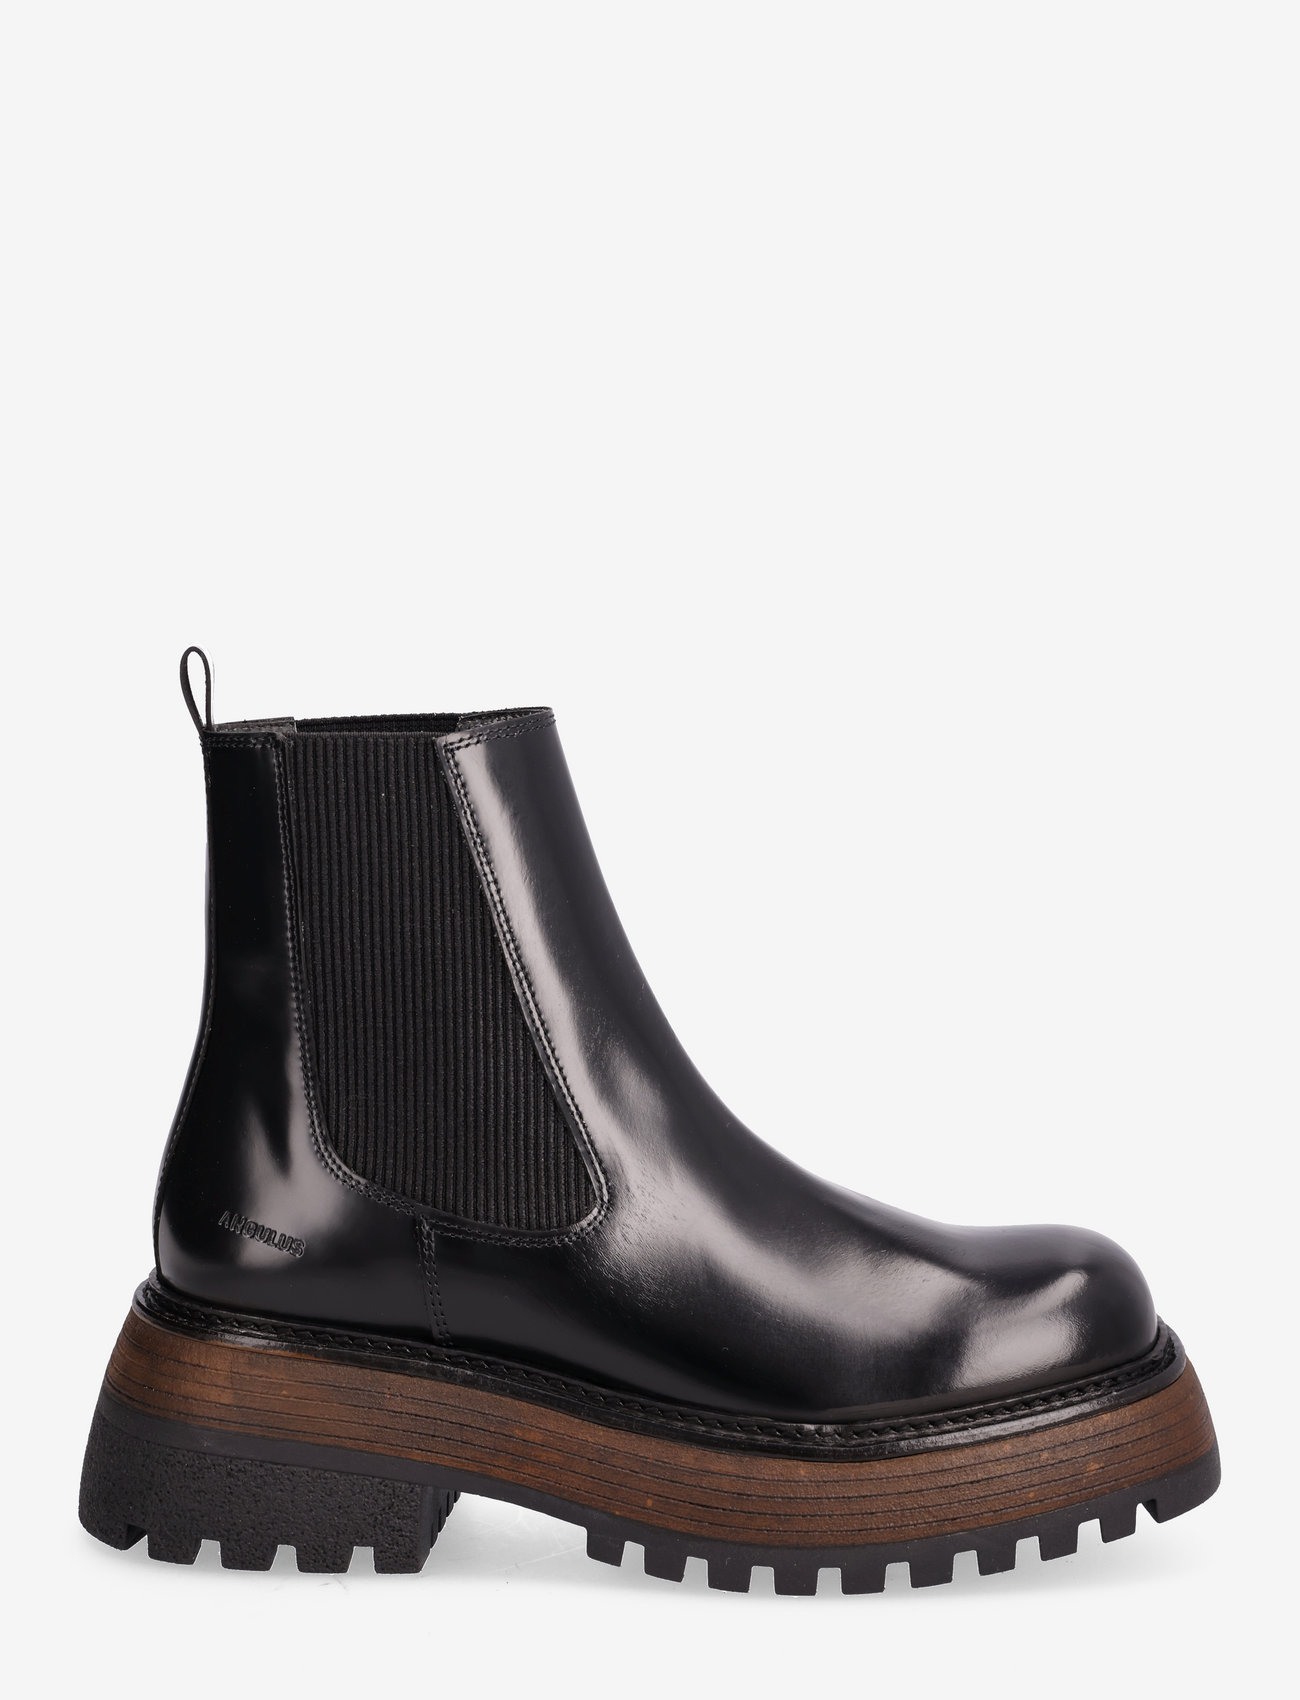 ANGULUS - Boots - flat - chelsea boots - 1425/019 black/black - 1